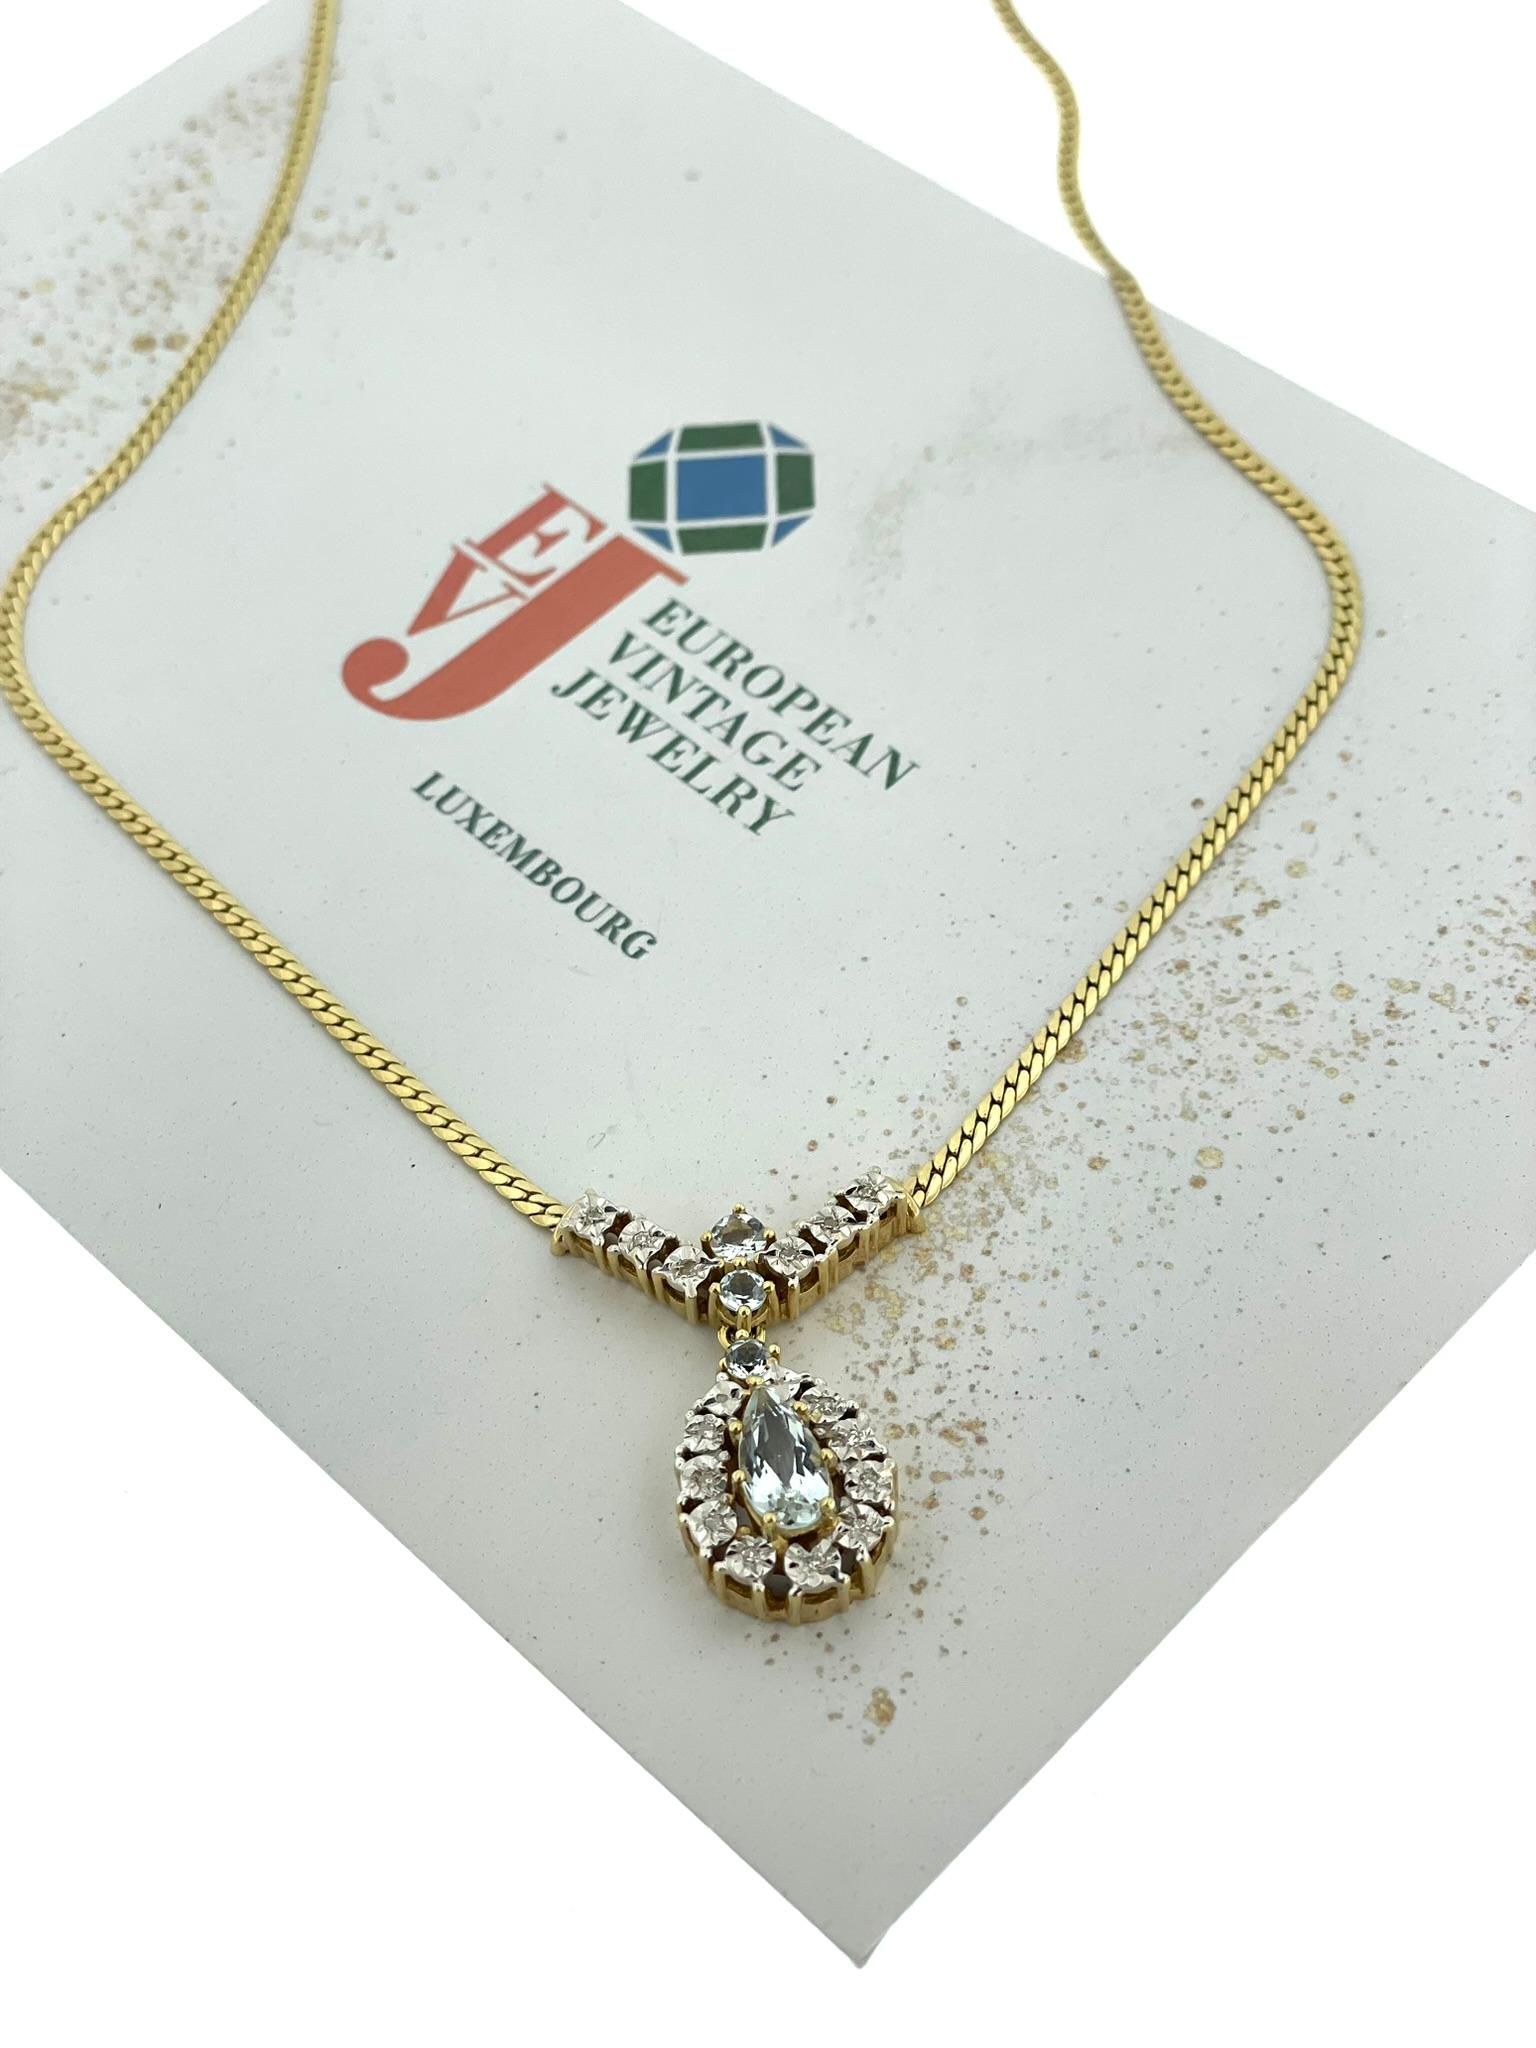 Diese Halskette aus IGI-zertifiziertem Gold ist ein exquisites Schmuckstück, das Luxus und Raffinesse nahtlos miteinander verbindet. Die aus 14-karätigem Gelb- und Weißgold gefertigte Kette besticht durch ihr zeitloses Design, das alle Blicke auf